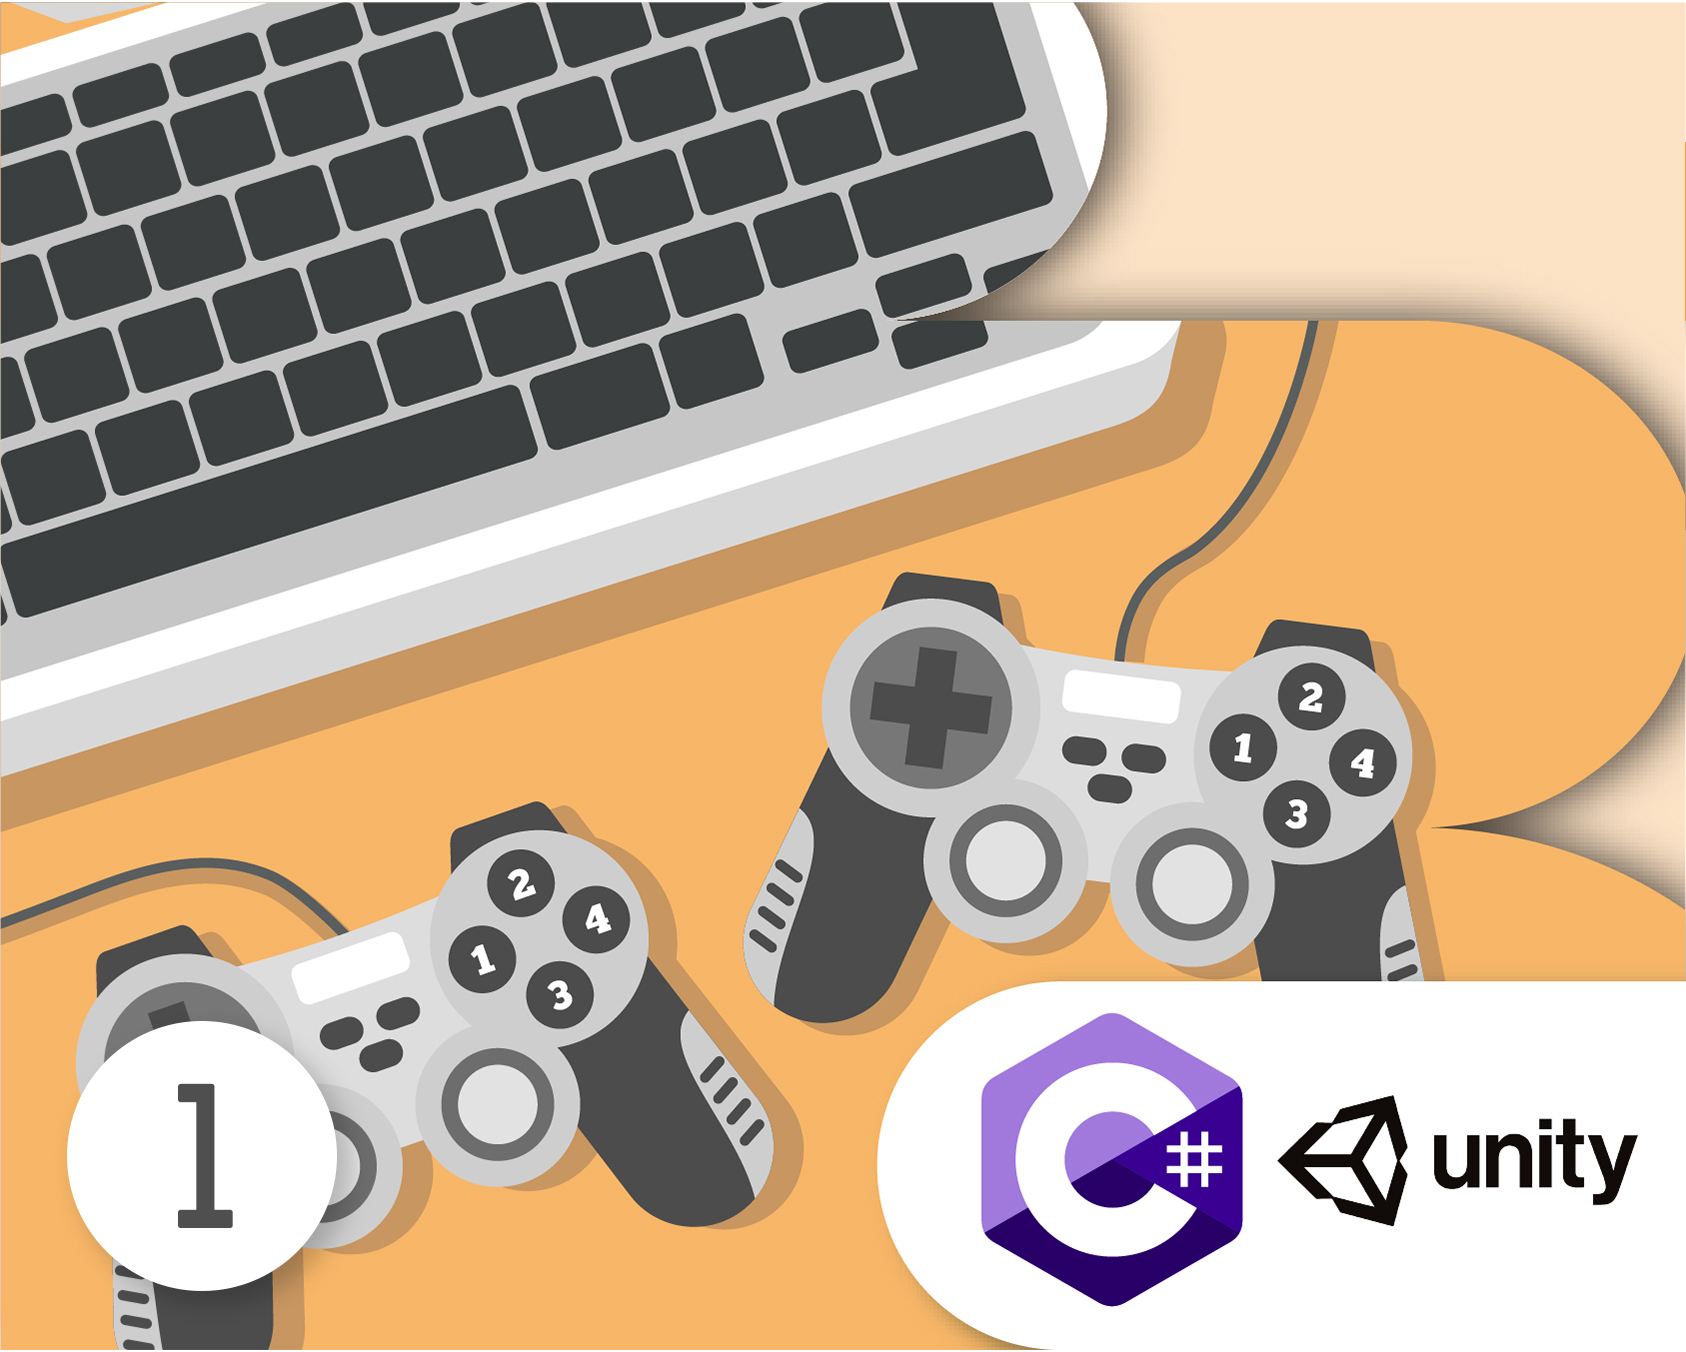 Izrada računalnih igara u programu Unity 1. stupanj 